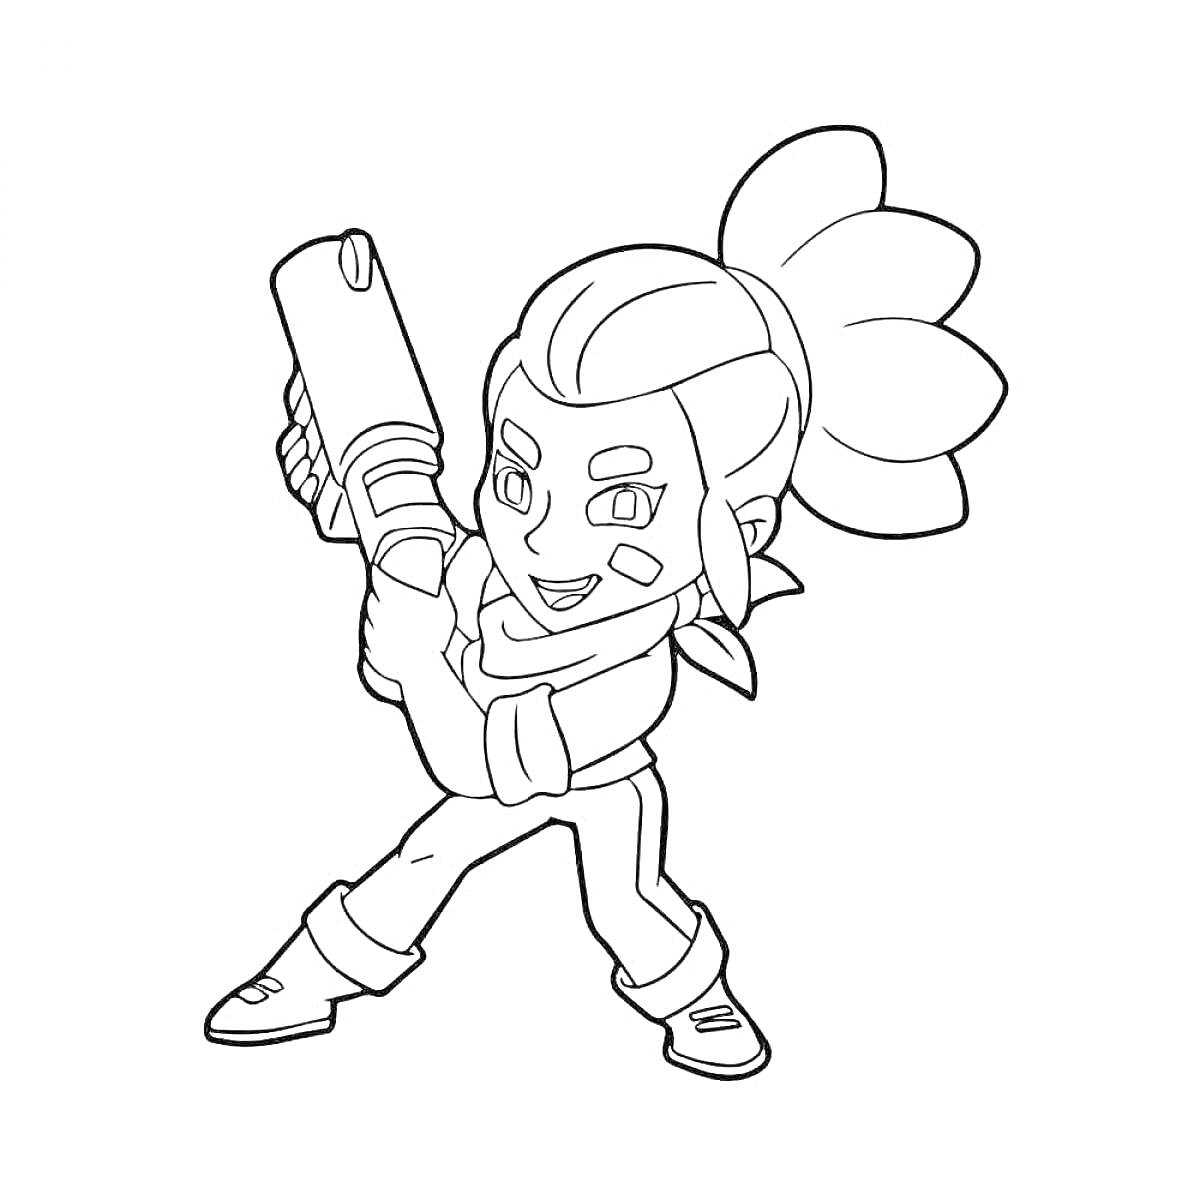 Раскраска Честер из игры Браво Старс с пушкой, повязкой на лице и волосами, собранными в хвост.